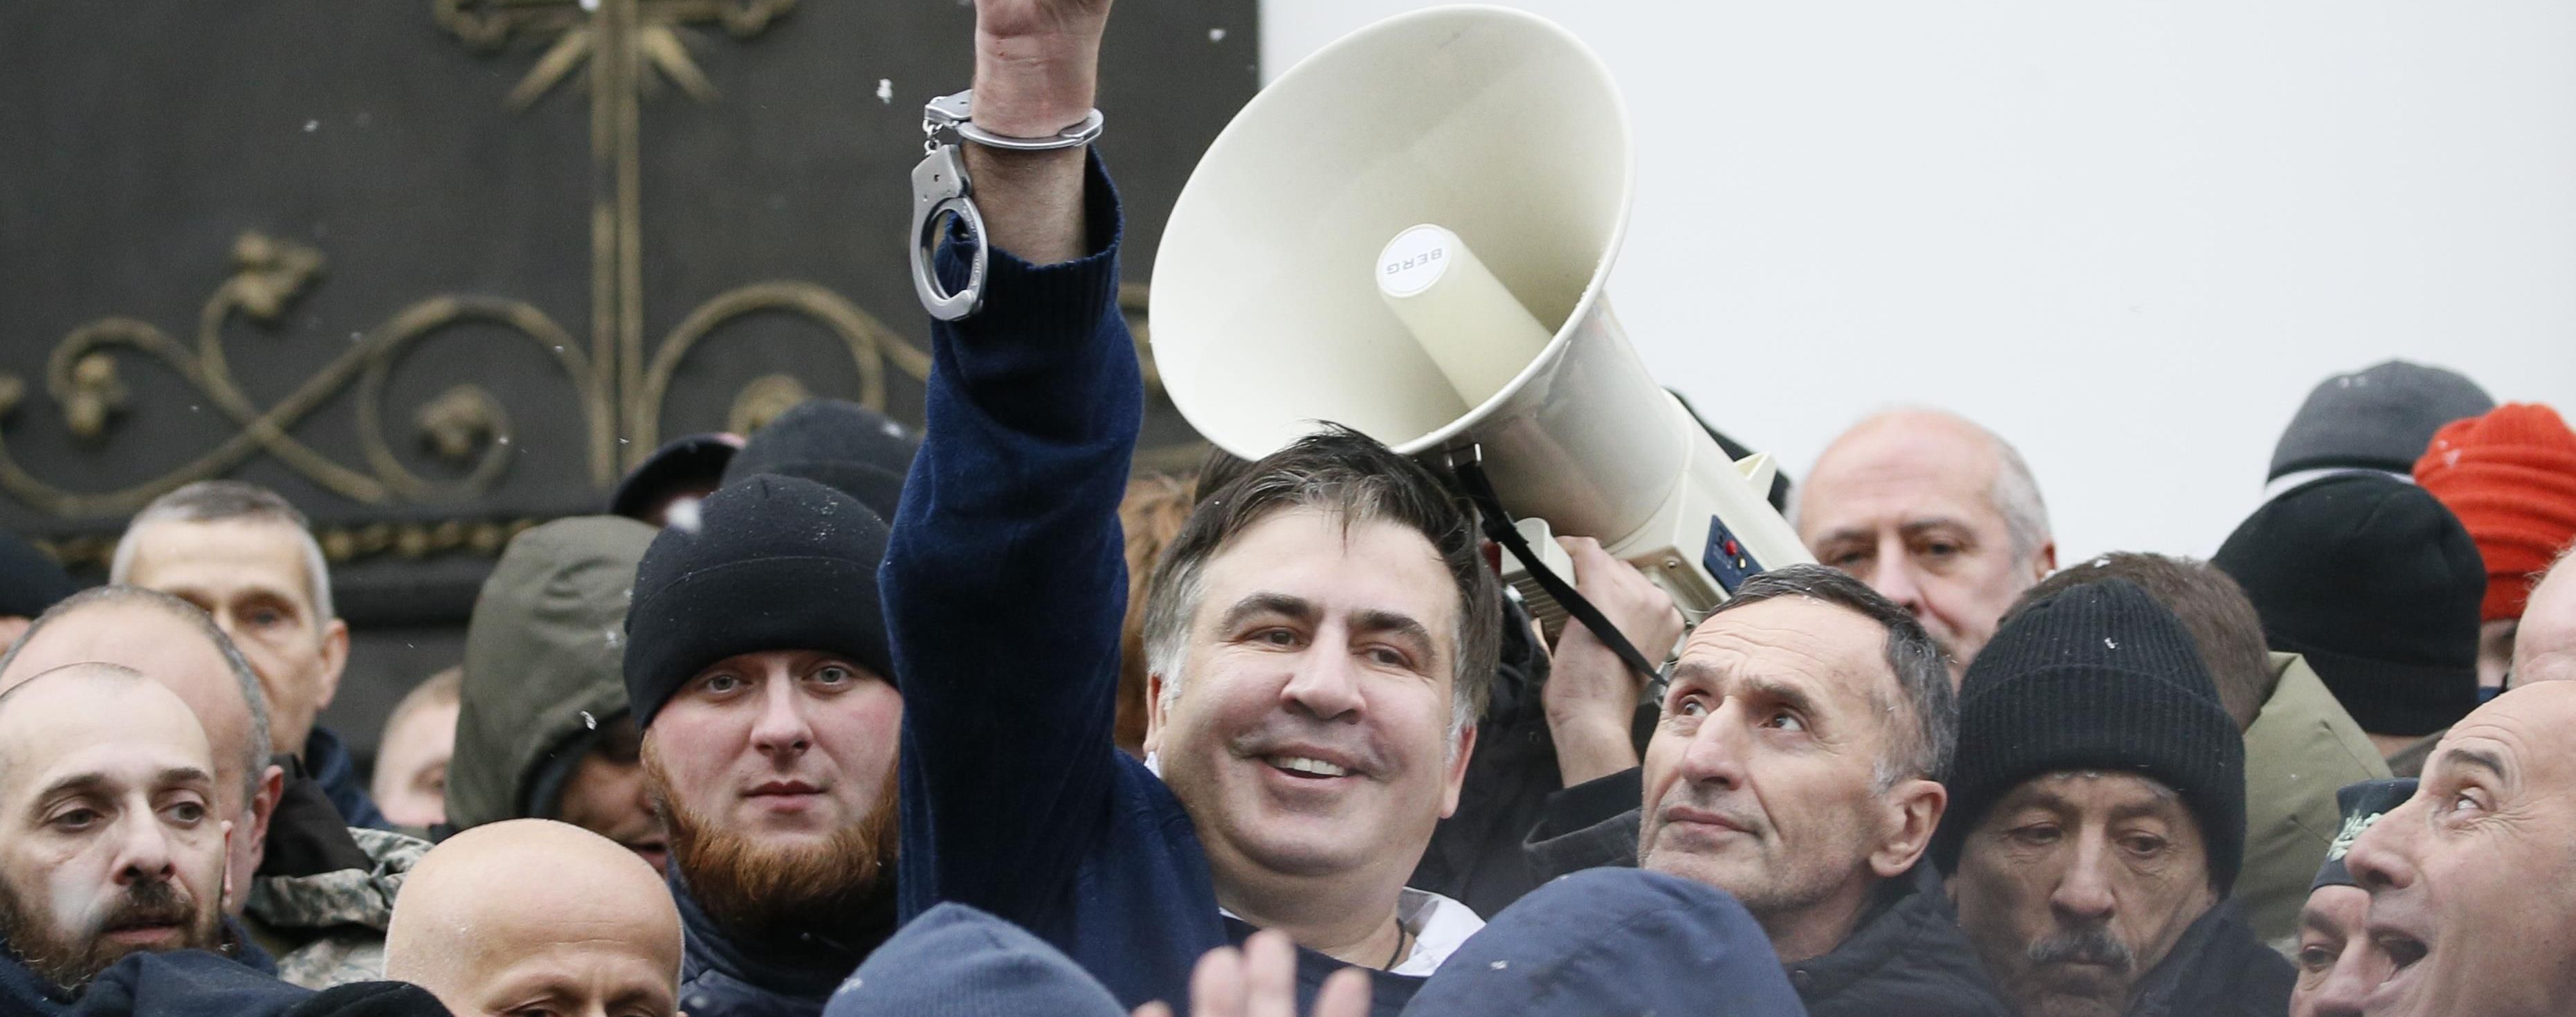 Саакашвили задержали в квартире бывшего главы полиции Луганщины